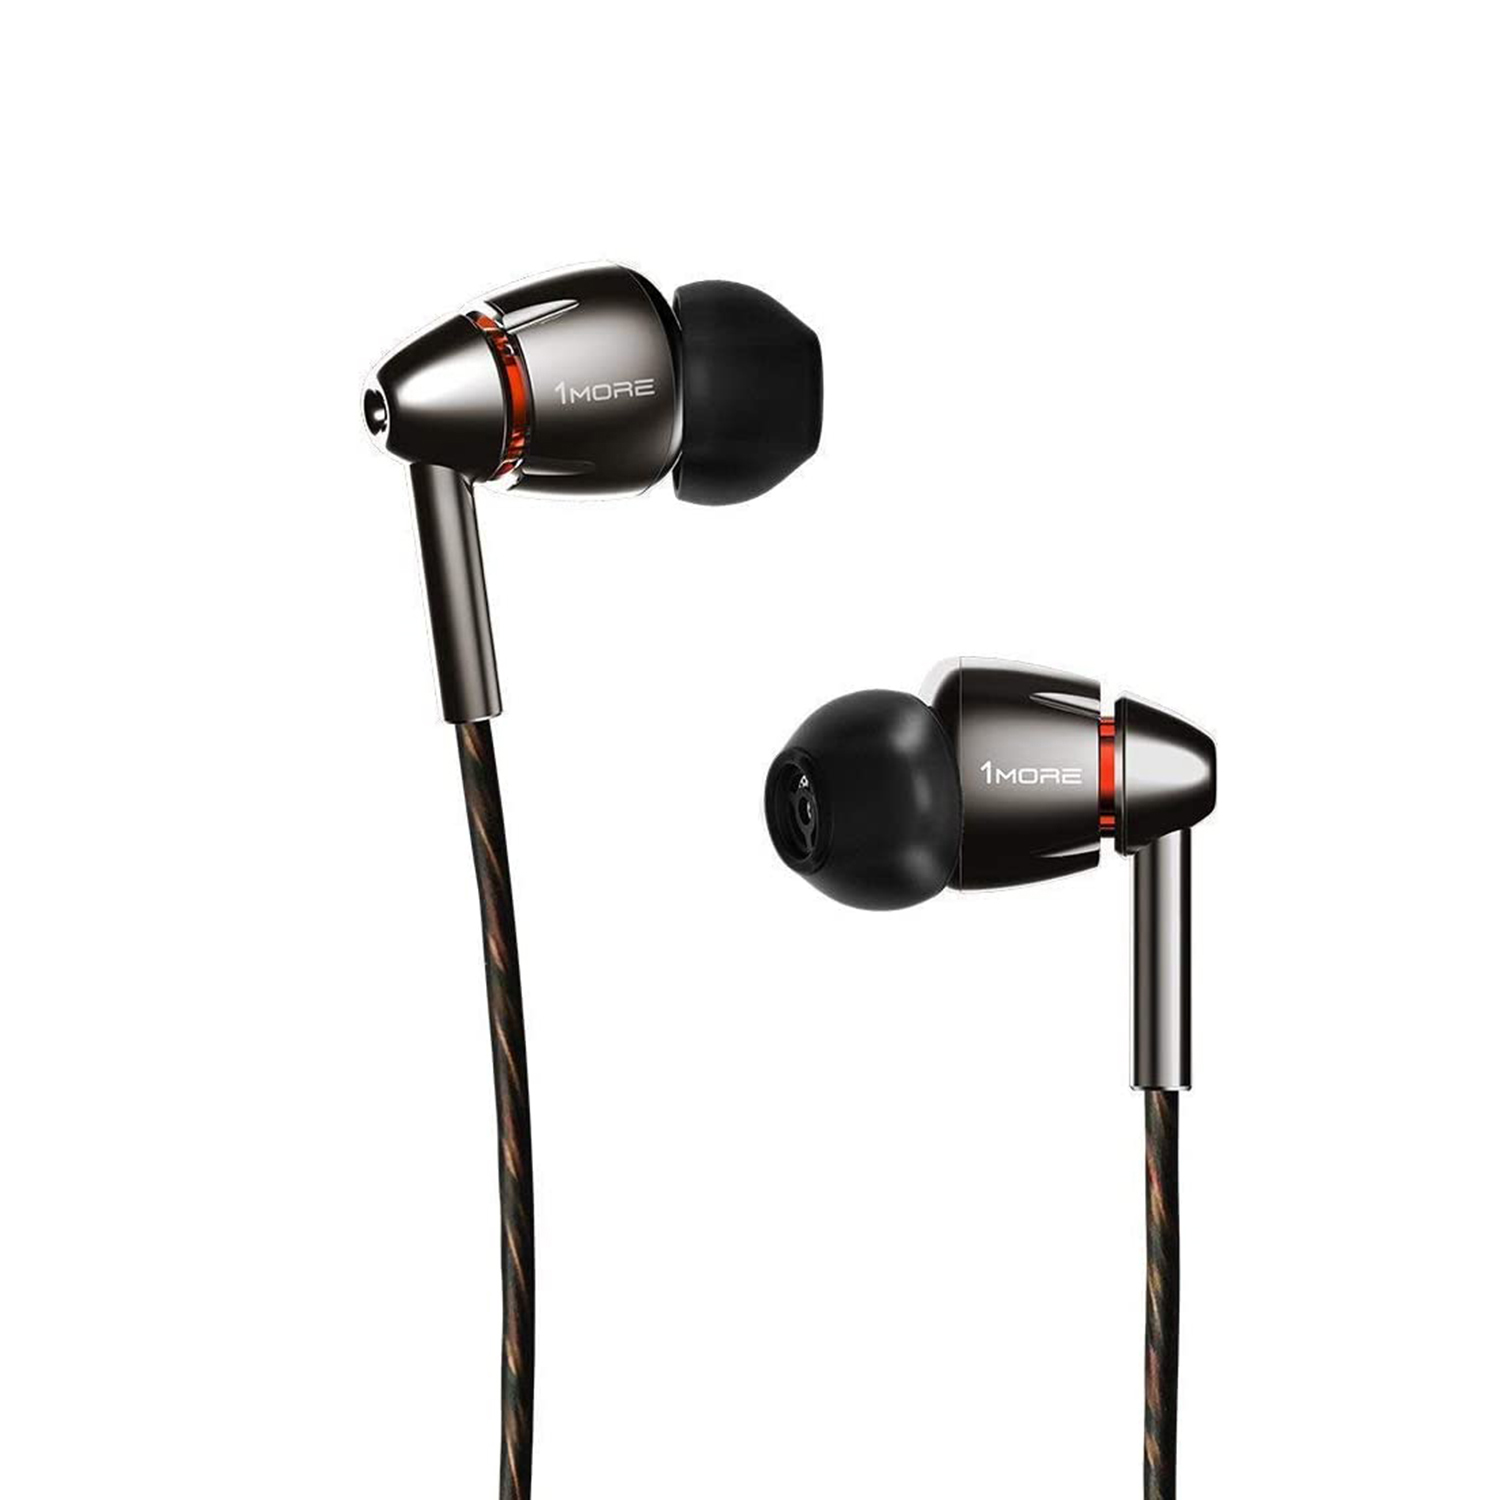 1MORE Treibern, E1010 In-Ear-Kopfhörer Kopfhörer zwei In-ear mit Silber